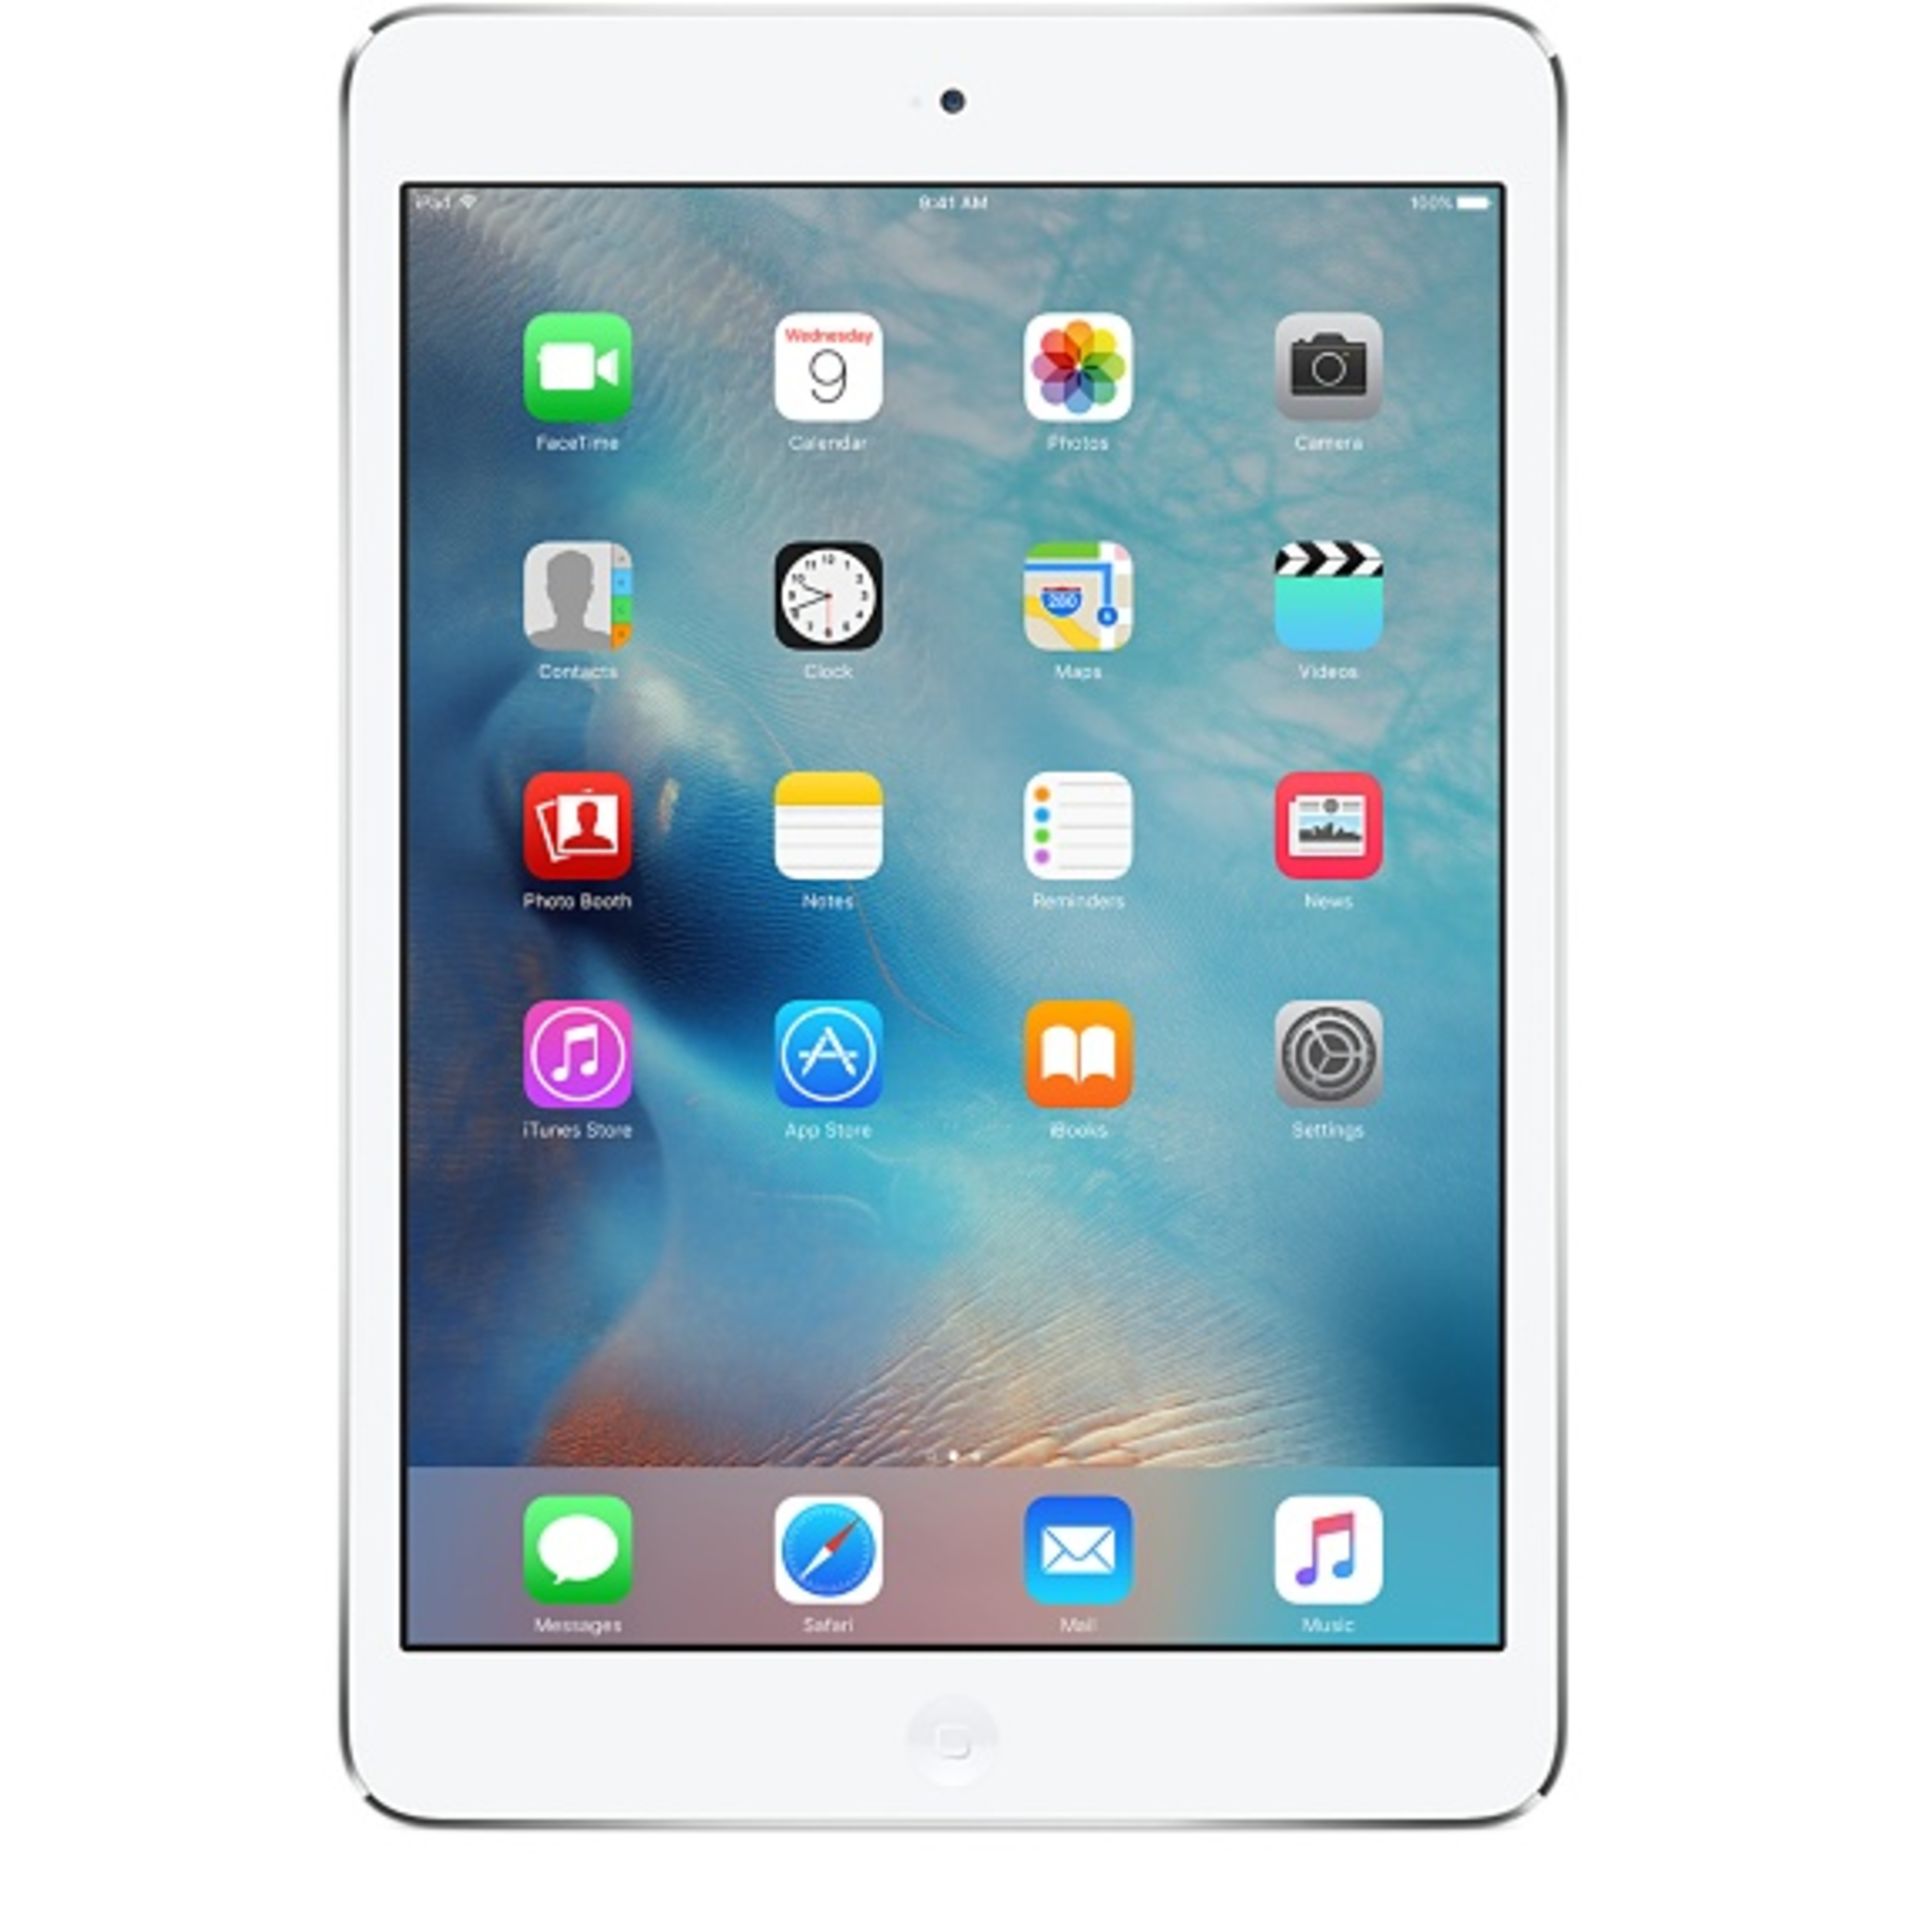 V Grade B Apple iPad Mini 2 16GB Silver - with box and accessories